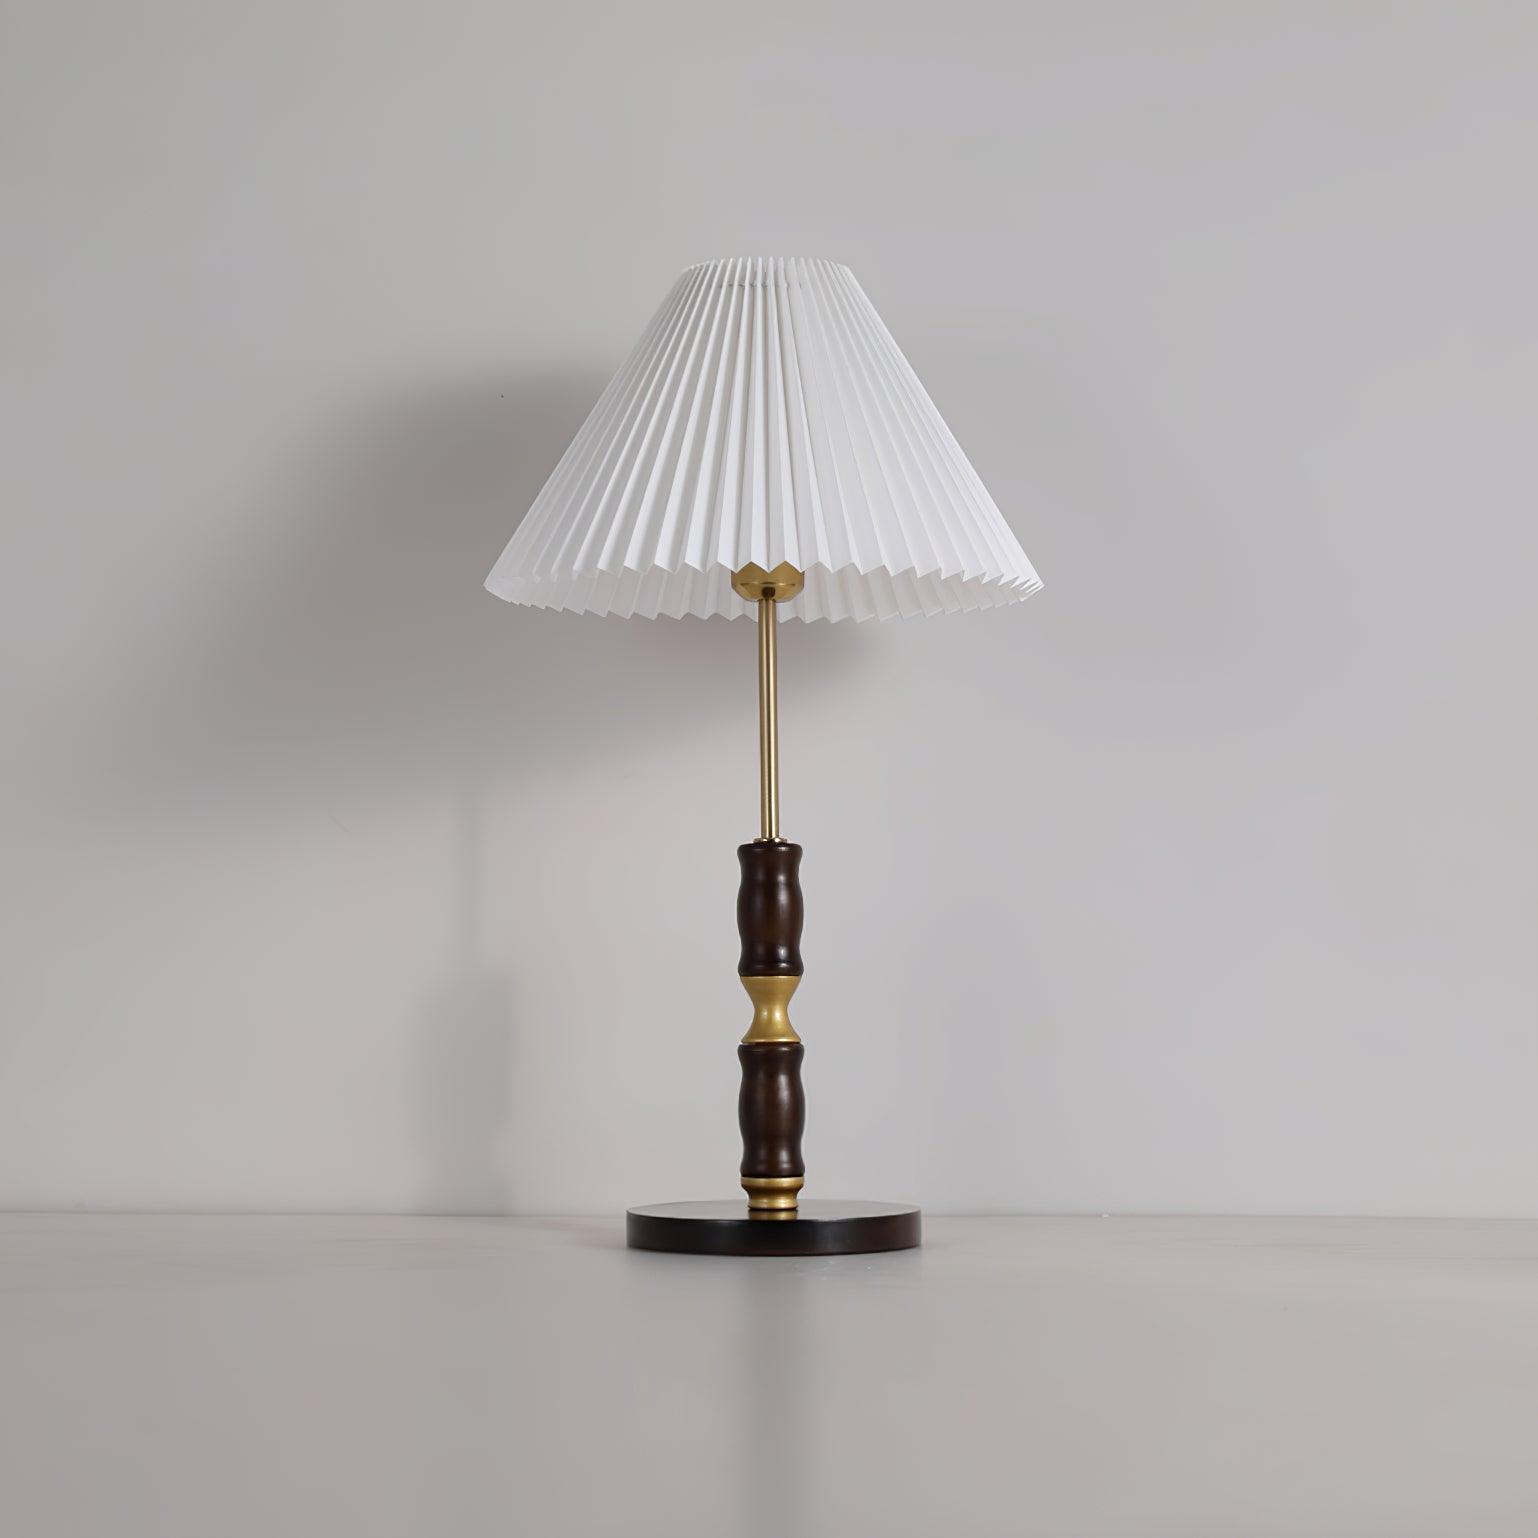 Napaco Wooden Table Lamp 13.4″- 23.6″ - Docos